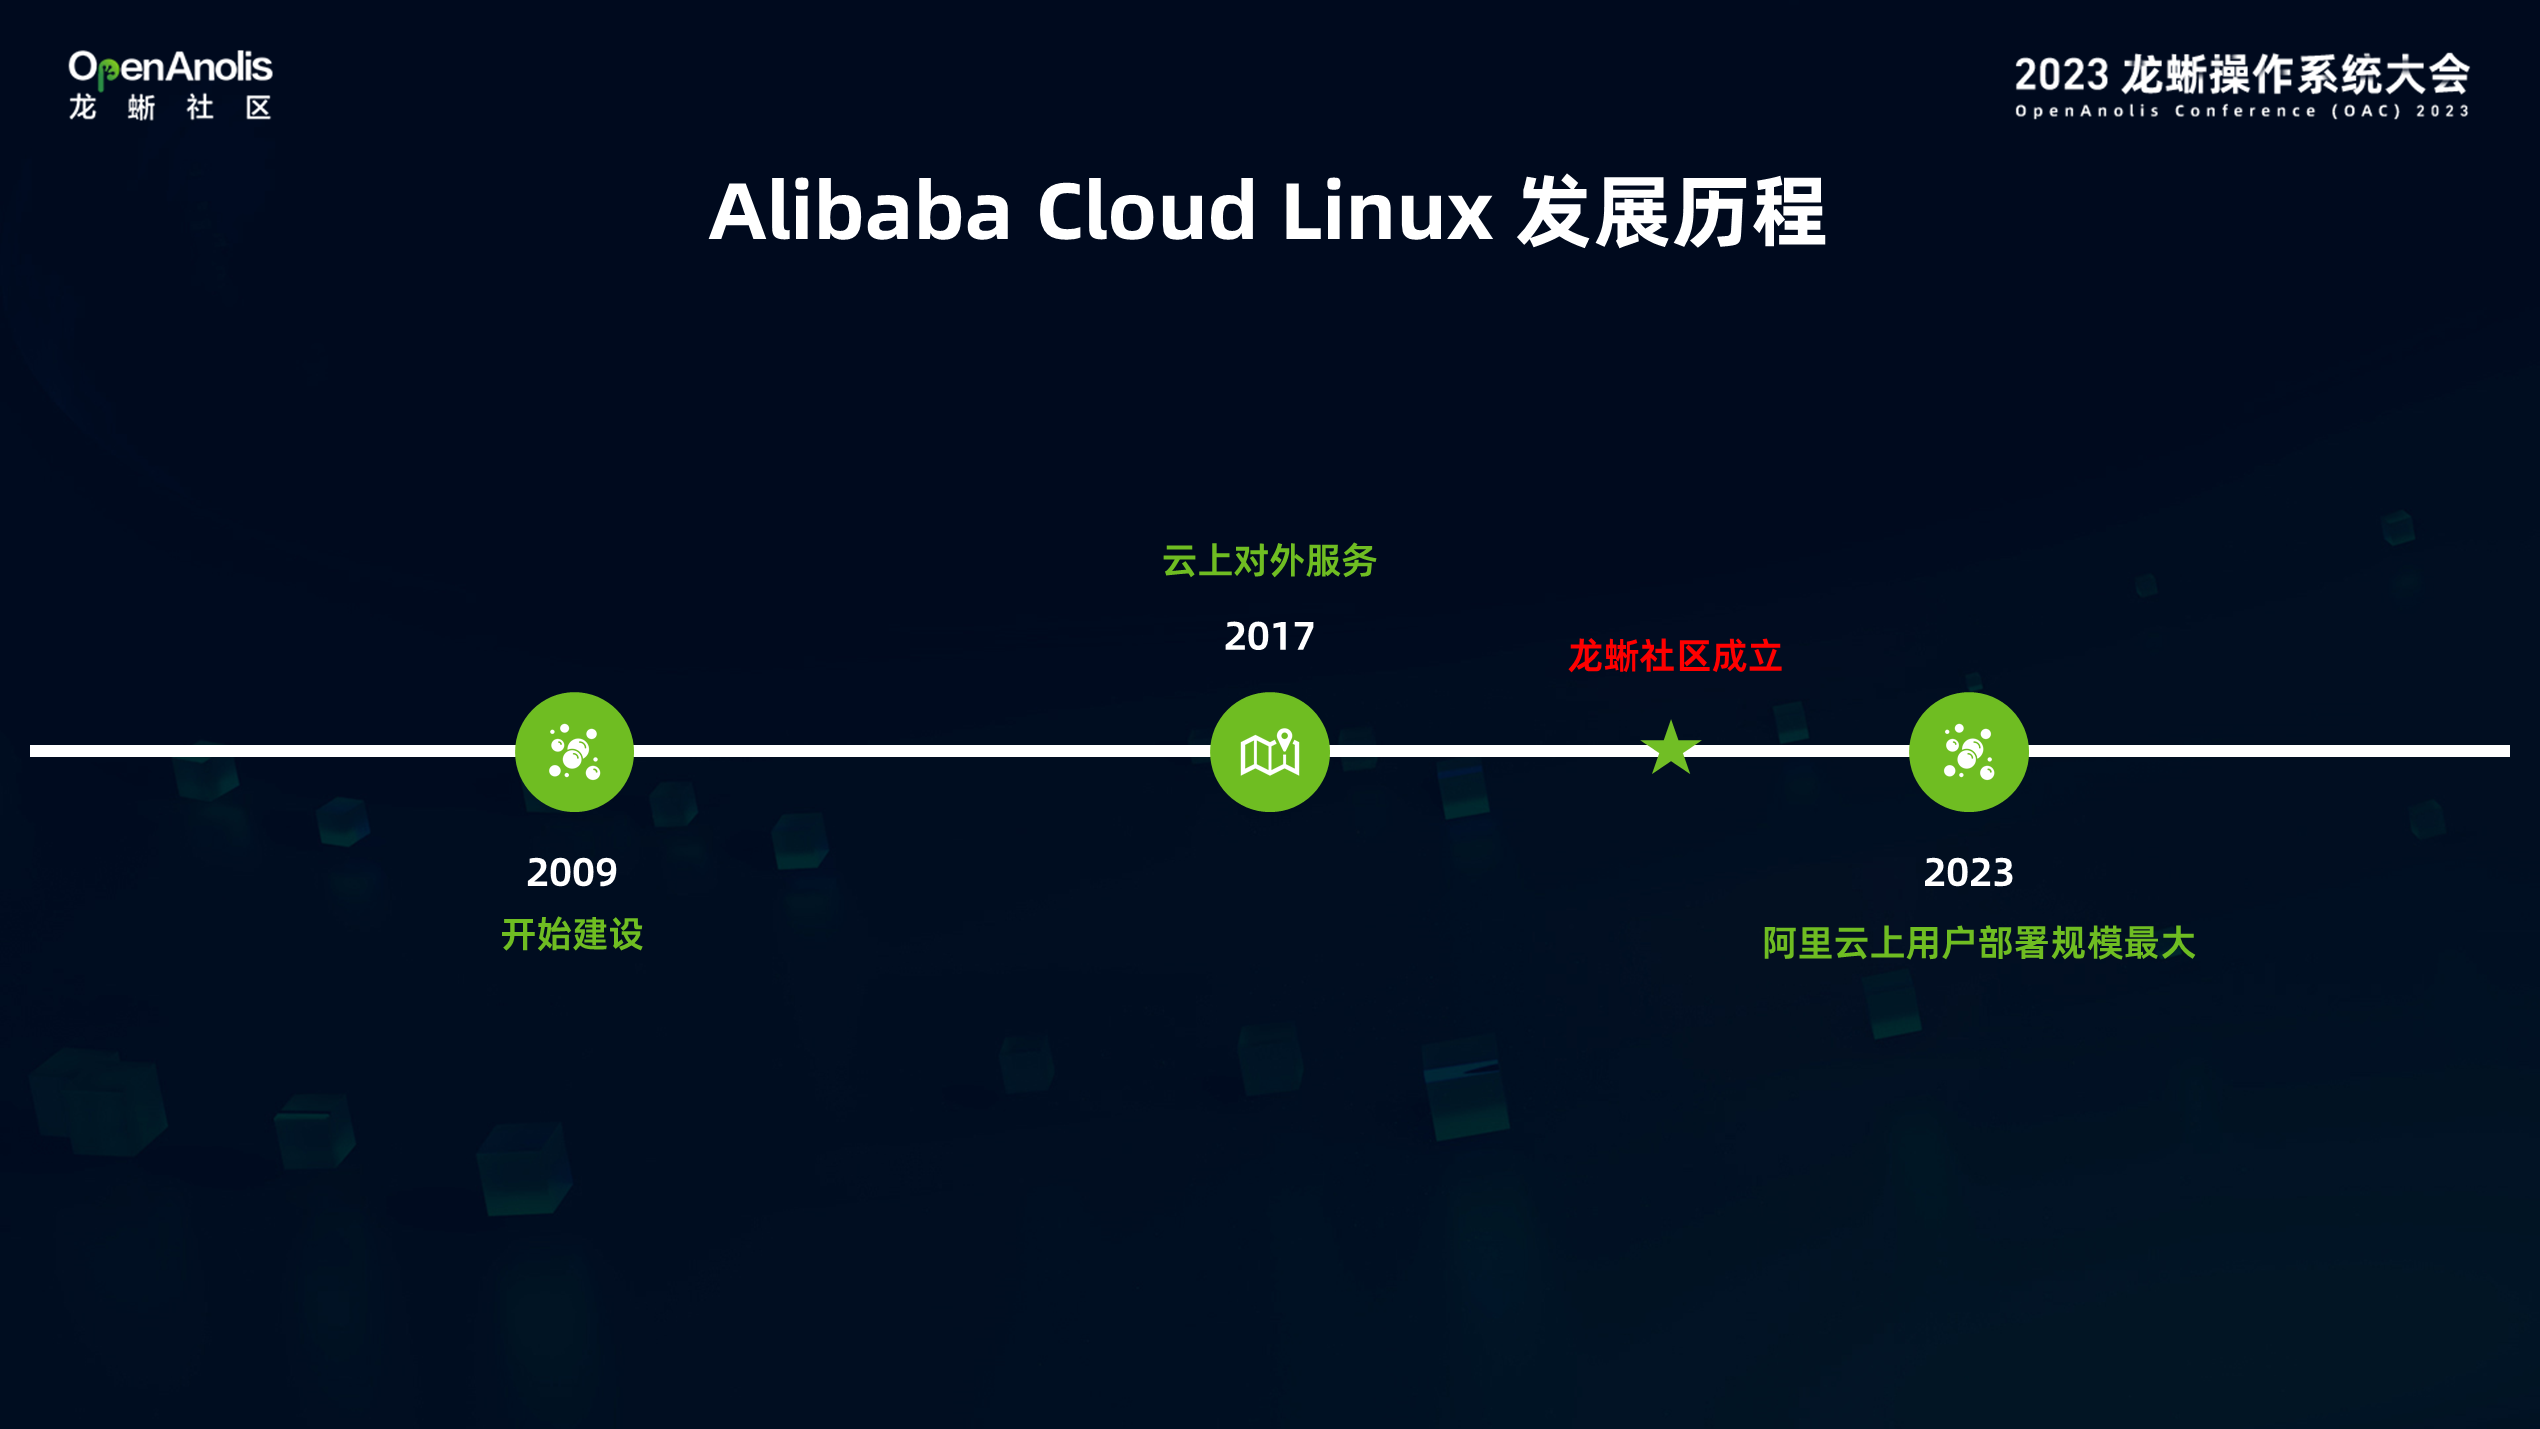 开箱即用的使用体验！Alibaba Cloud Linux 的演进之旅-鸿蒙开发者社区